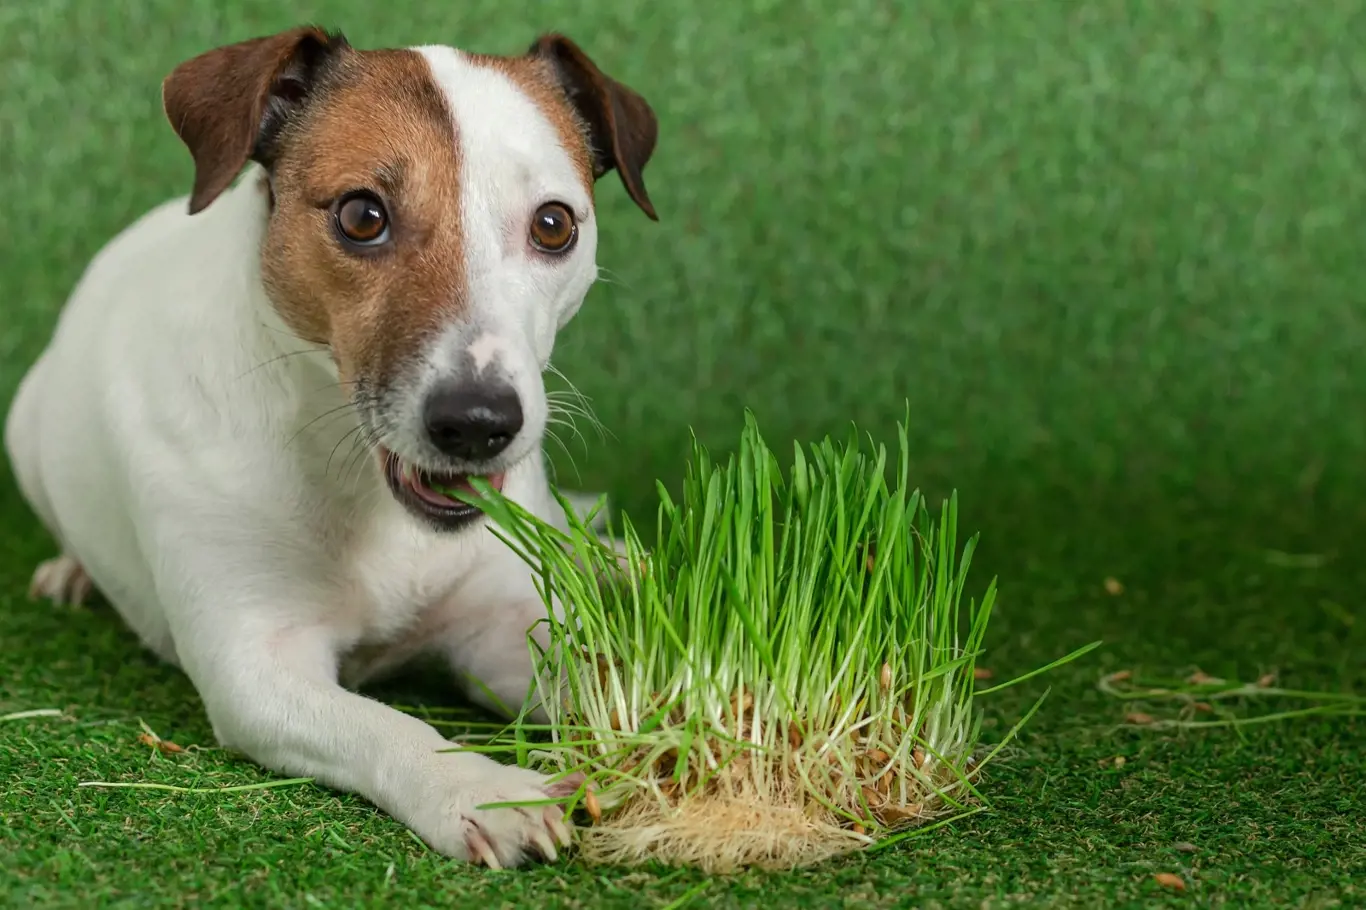 Jedovaté rostliny pro psy